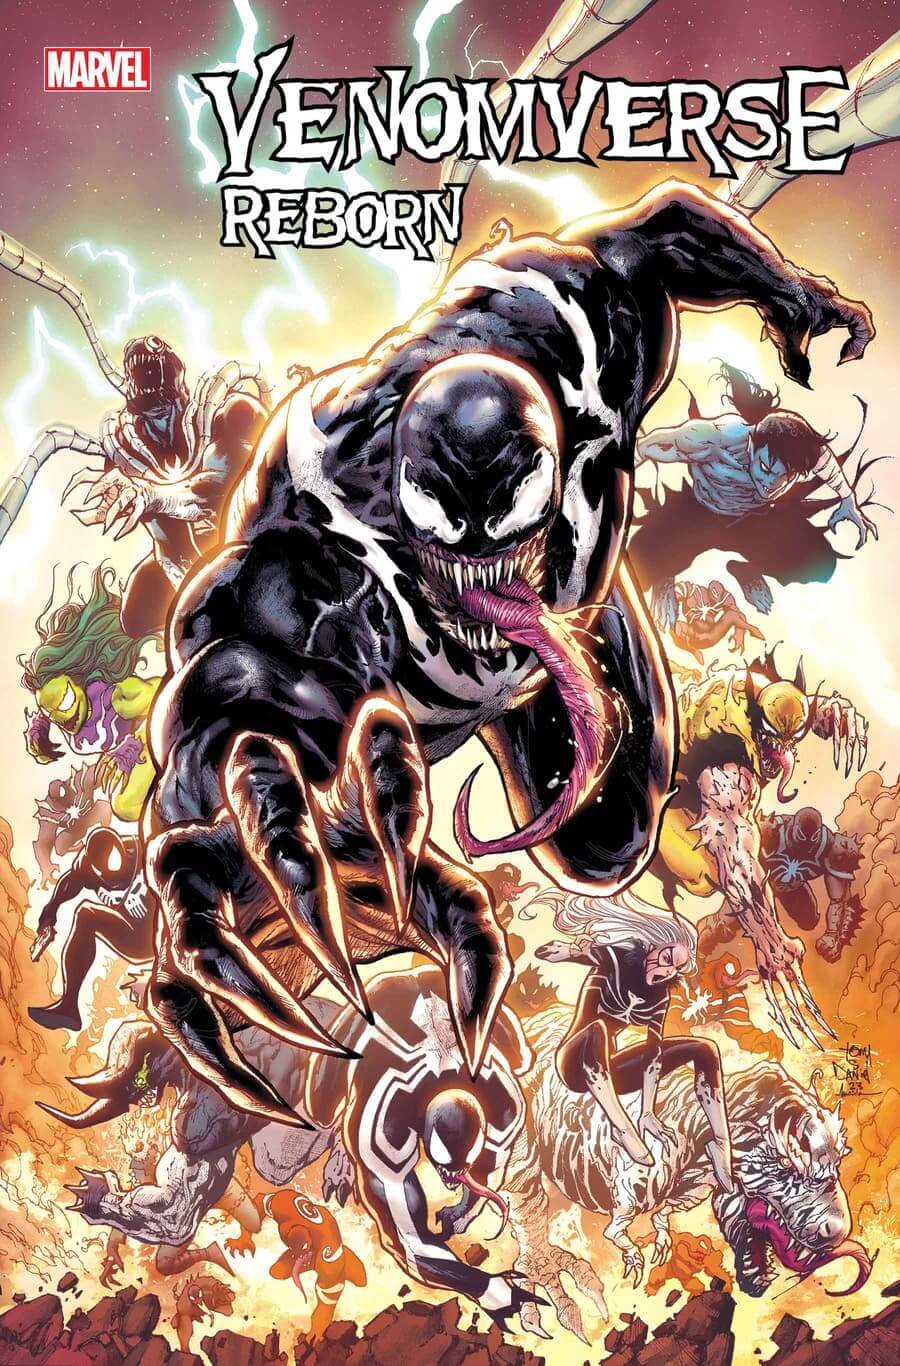 Couverture de Venomverse Reborn 1 par Tony Daniel